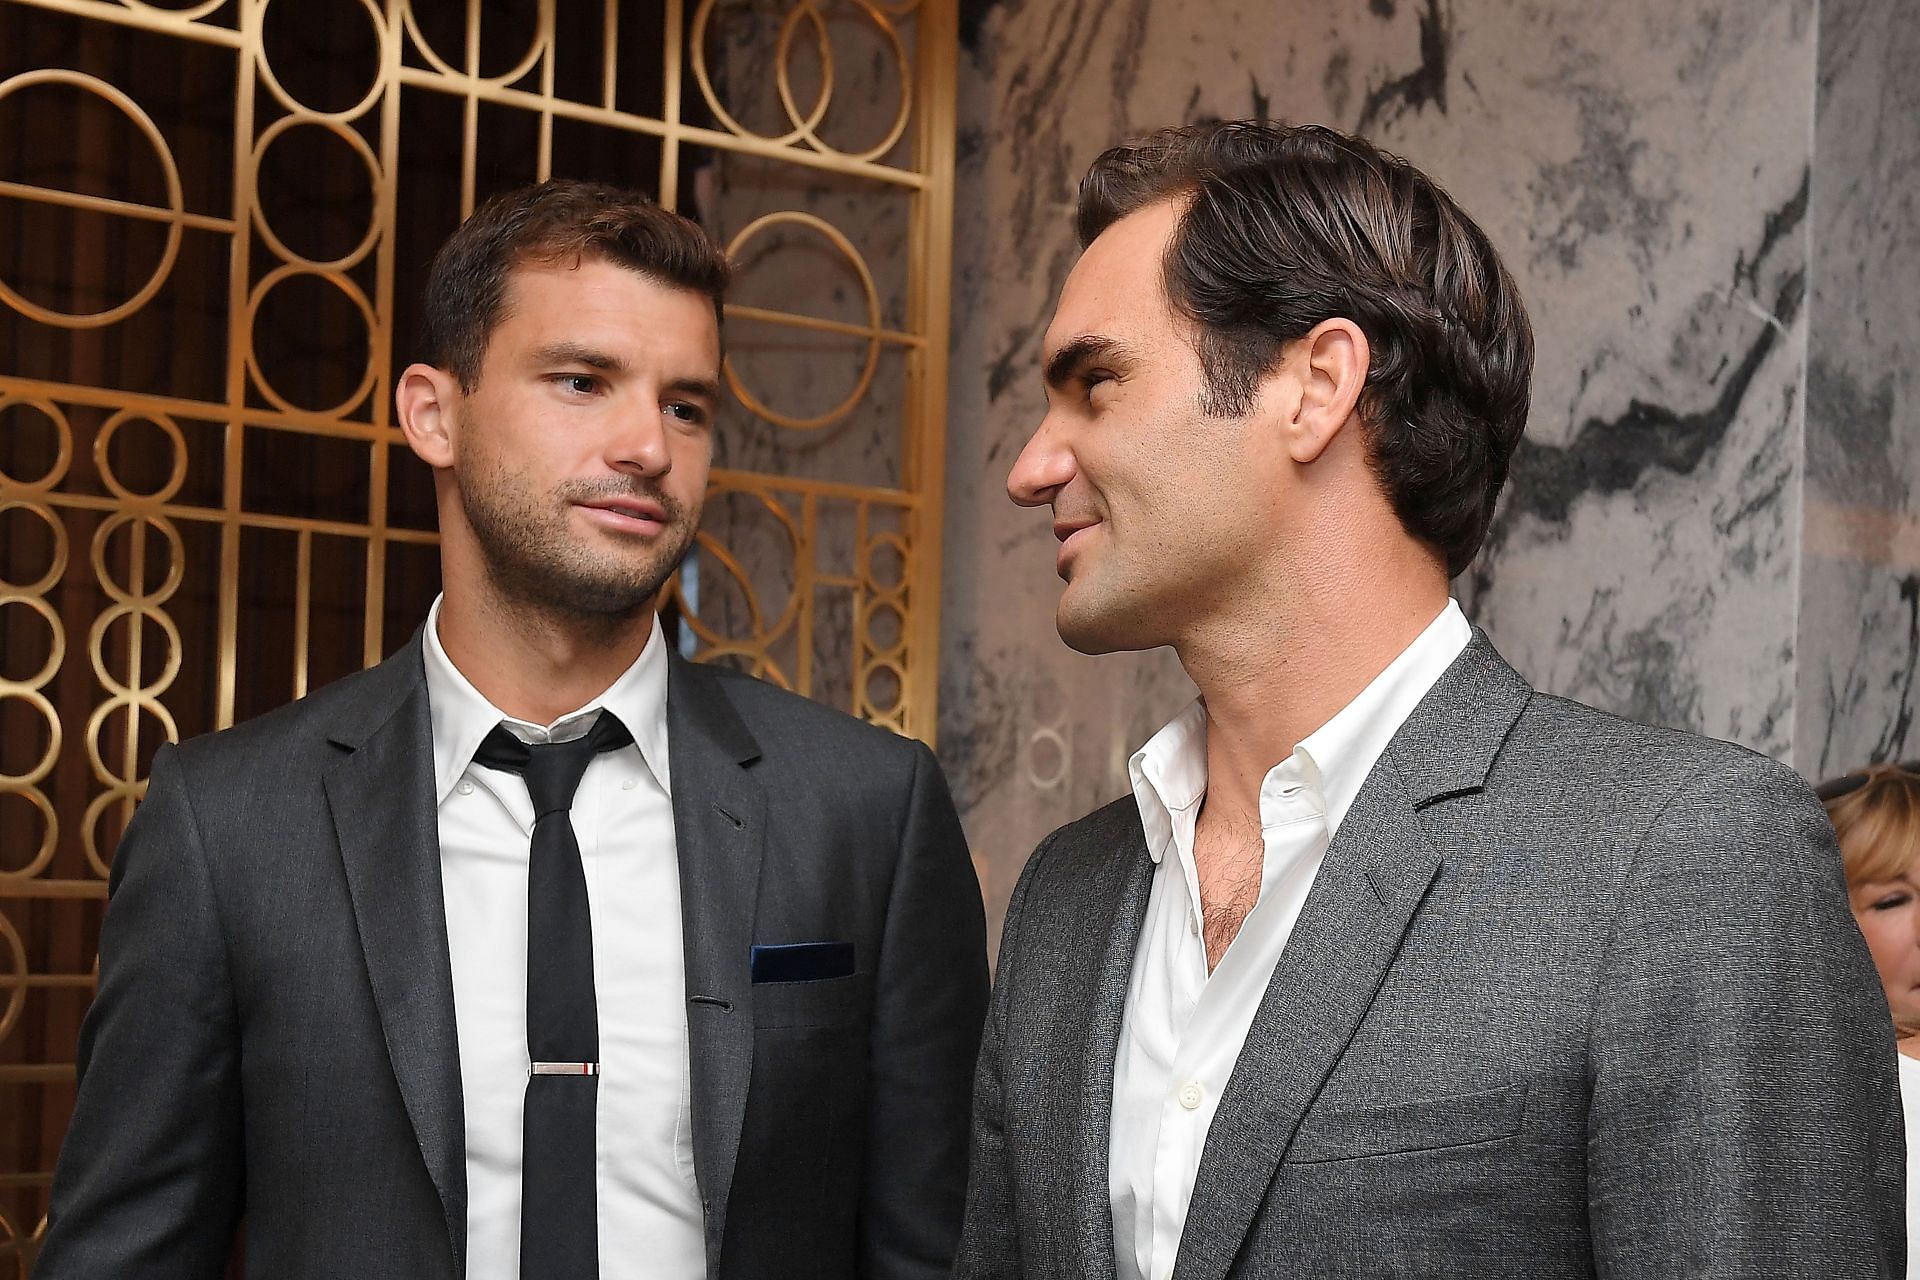 Dimitrov alongside Roger Federer